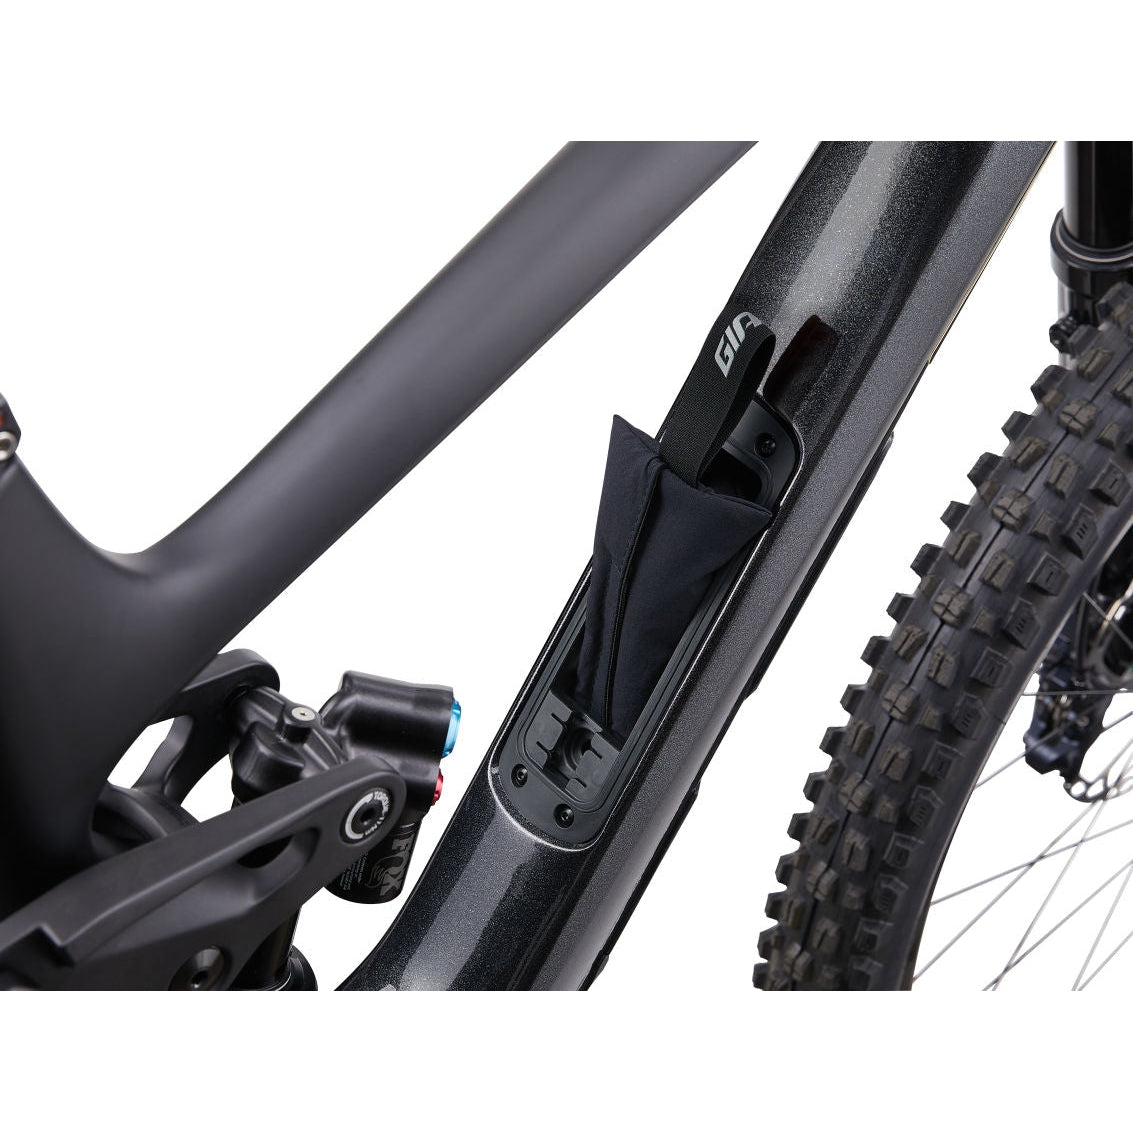 Giant Reign Advanced Pro 29 1 Carbon Mountain Bike (2023) - Bikes - Bicycle Warehouse